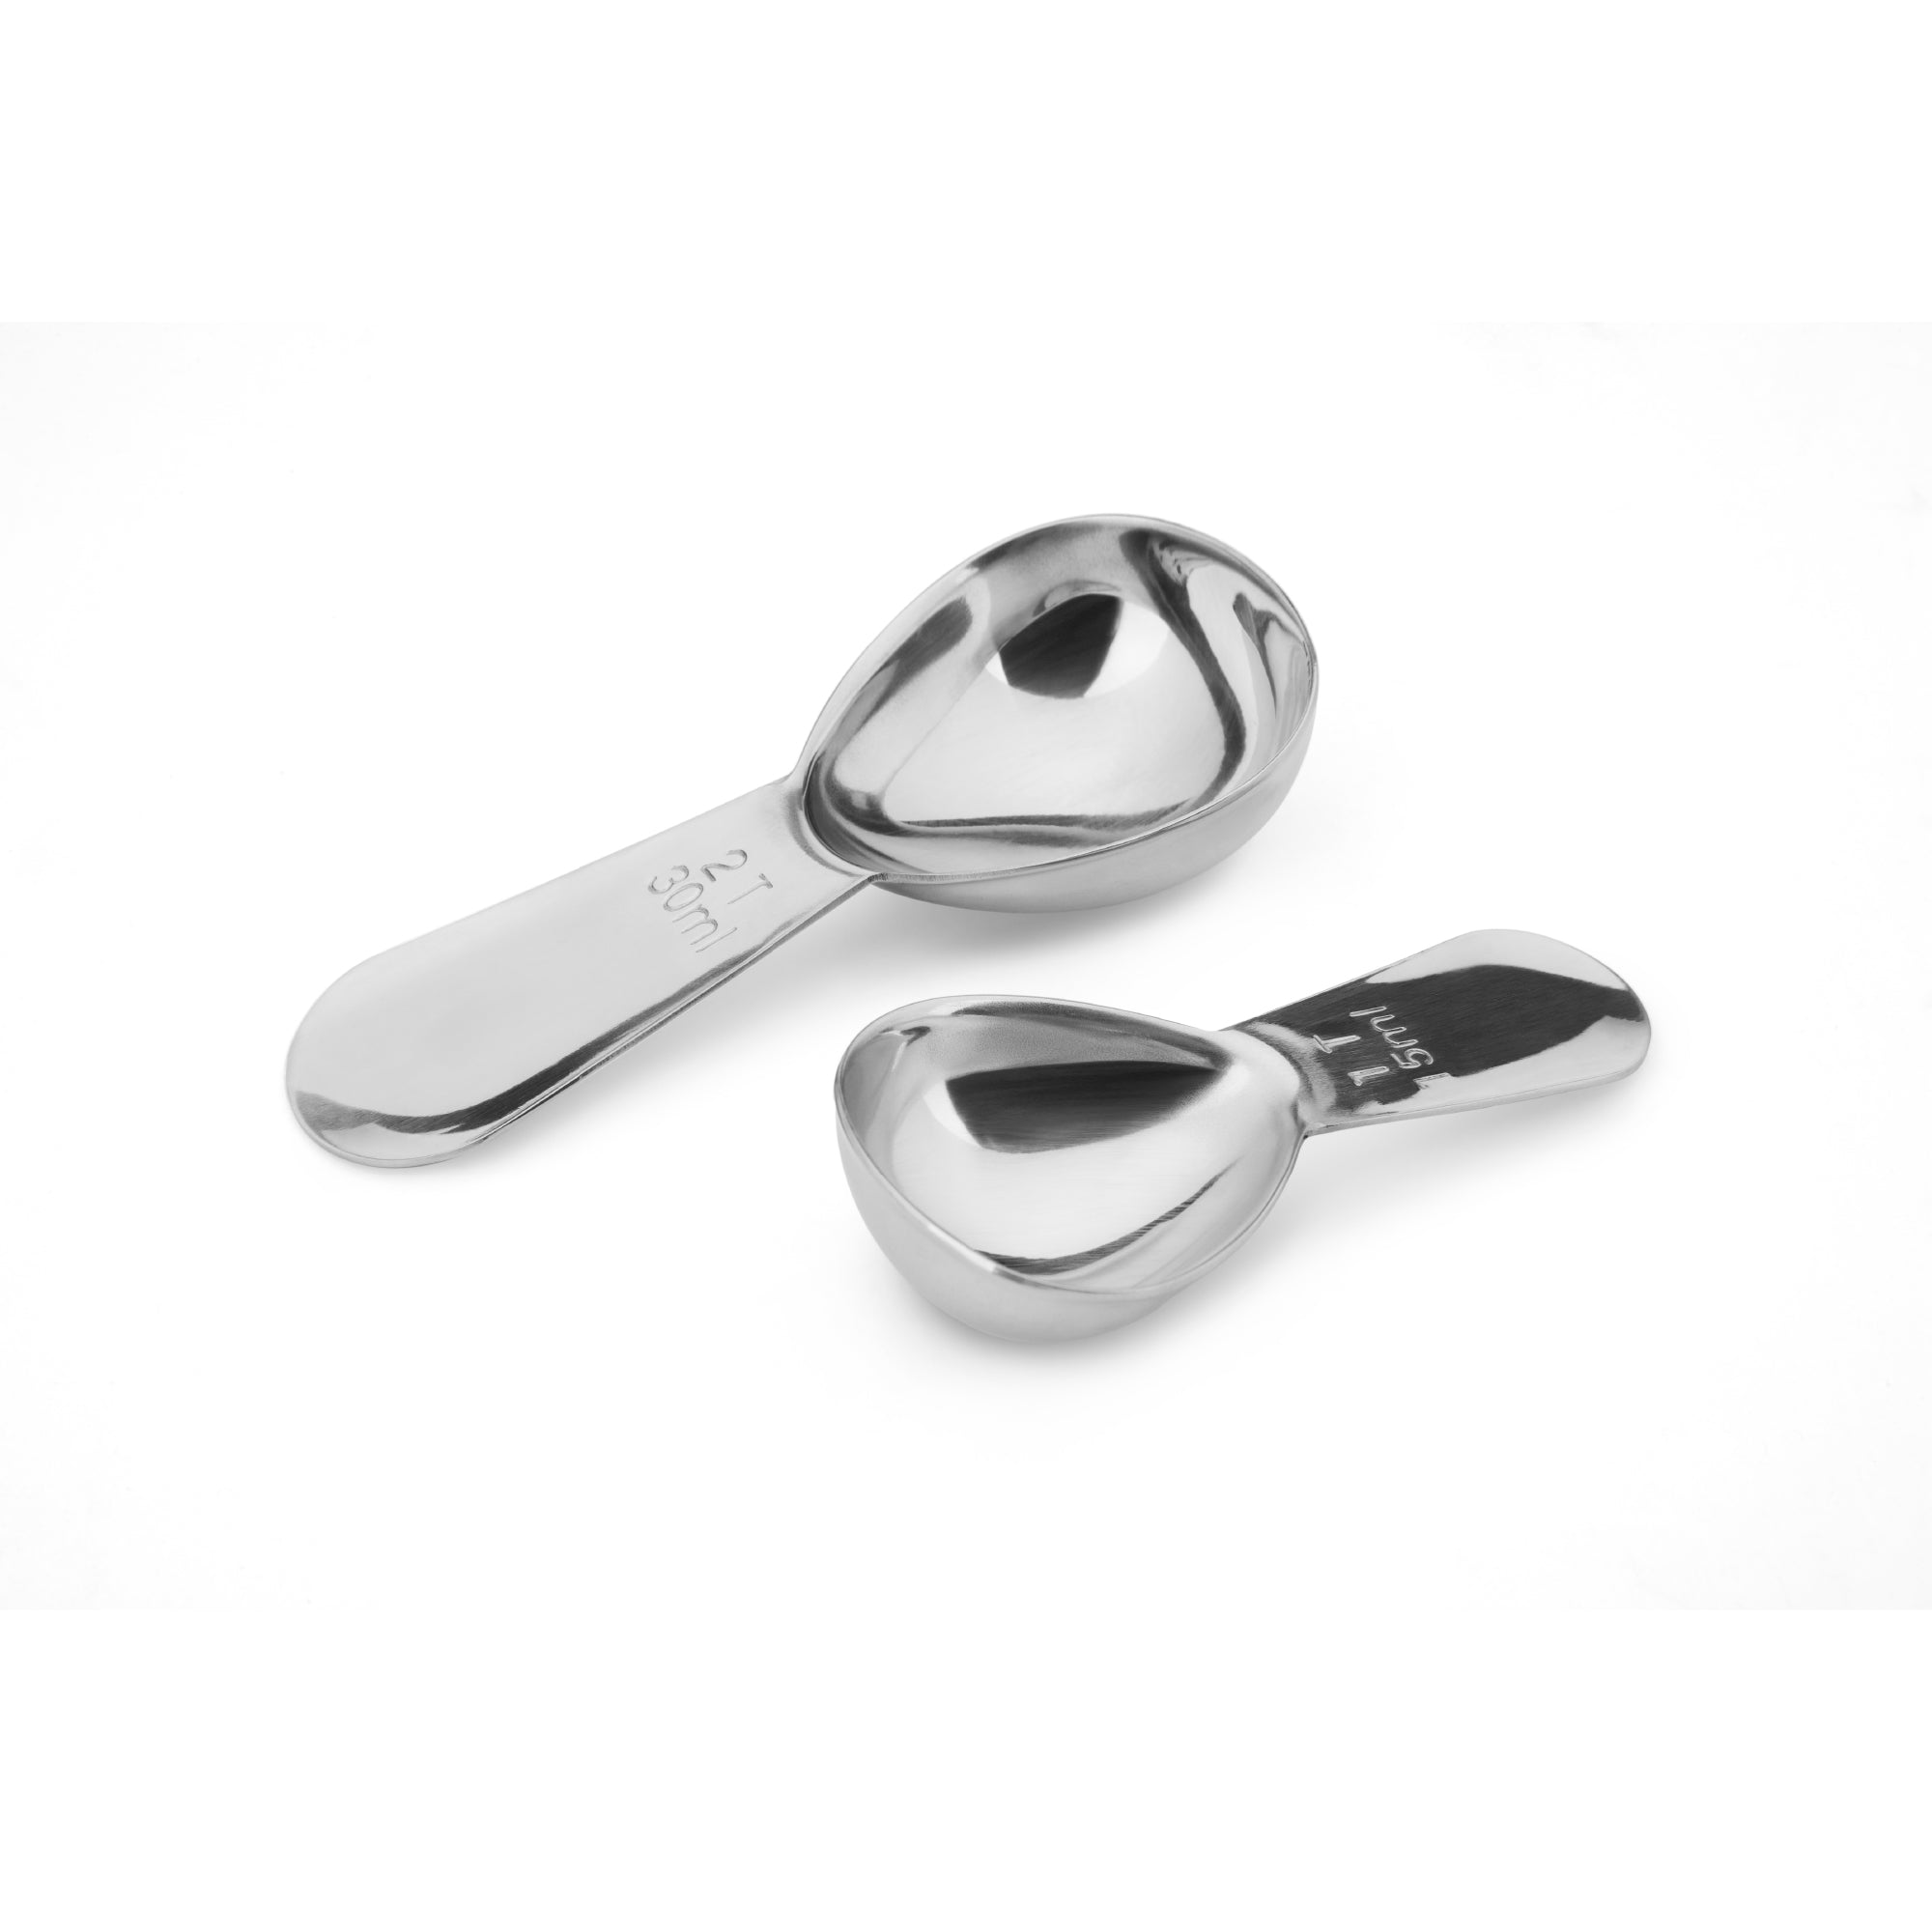 2-Piece Adjustable Measuring Spoons 